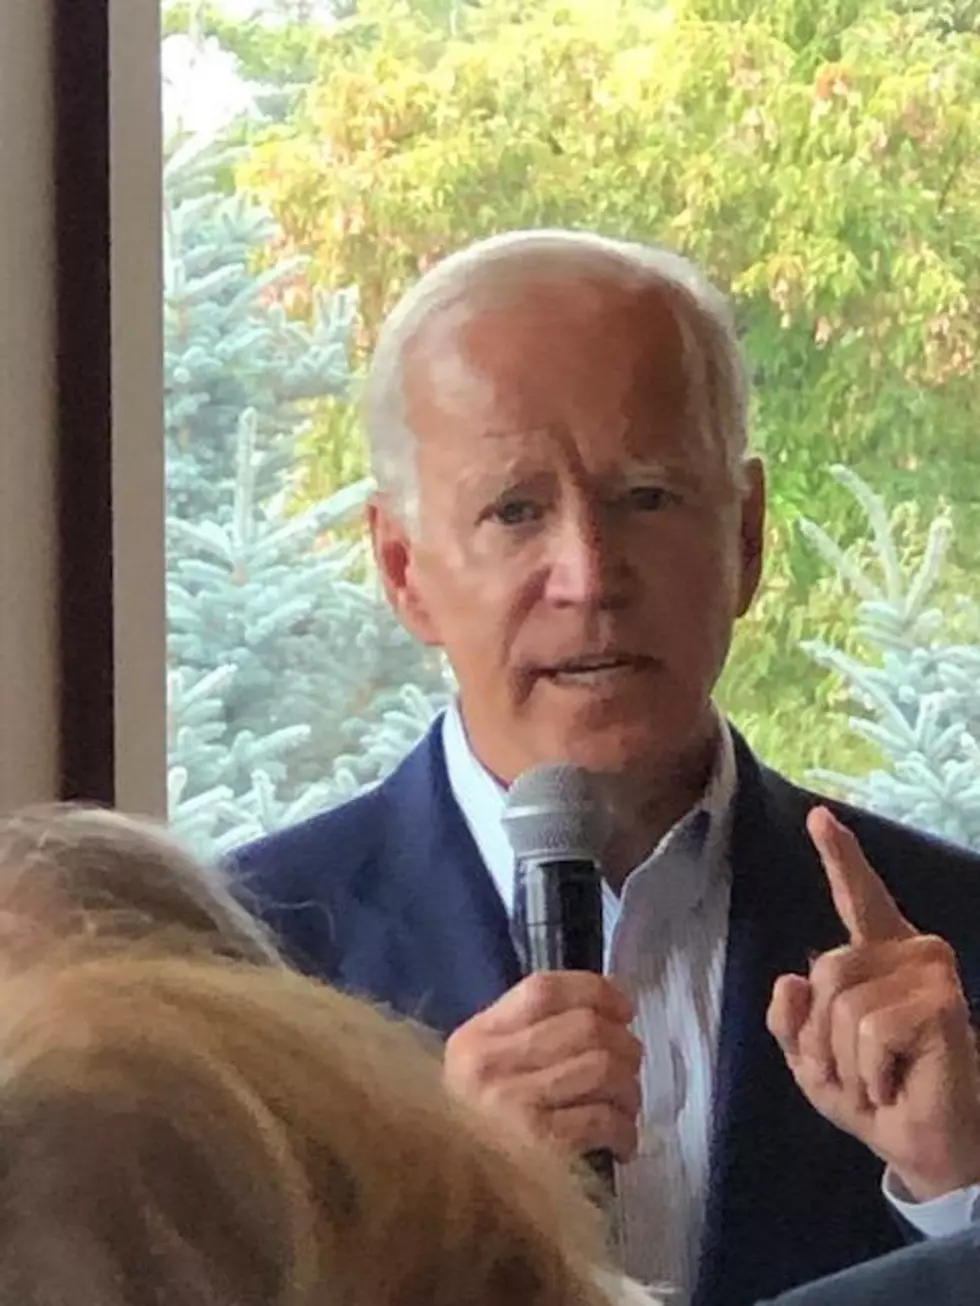 Sister of Joe Biden visits Utah